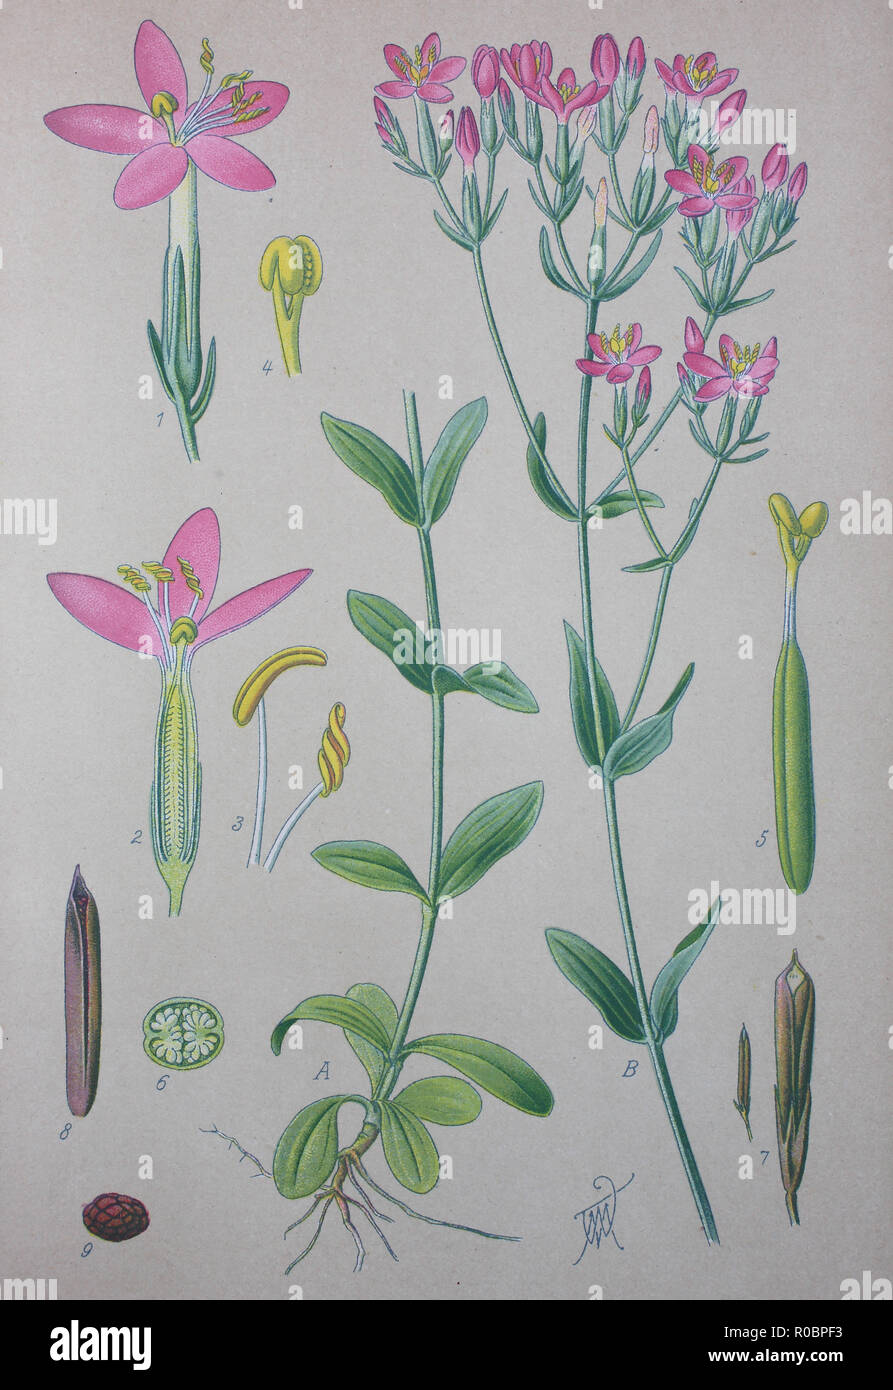 Mejora digital de alta calidad en la reproducción: Centaurium erythraea es una especie de planta con flores en la familia de genciana conocida con el nombre común de común europeo y centauro centauro Foto de stock